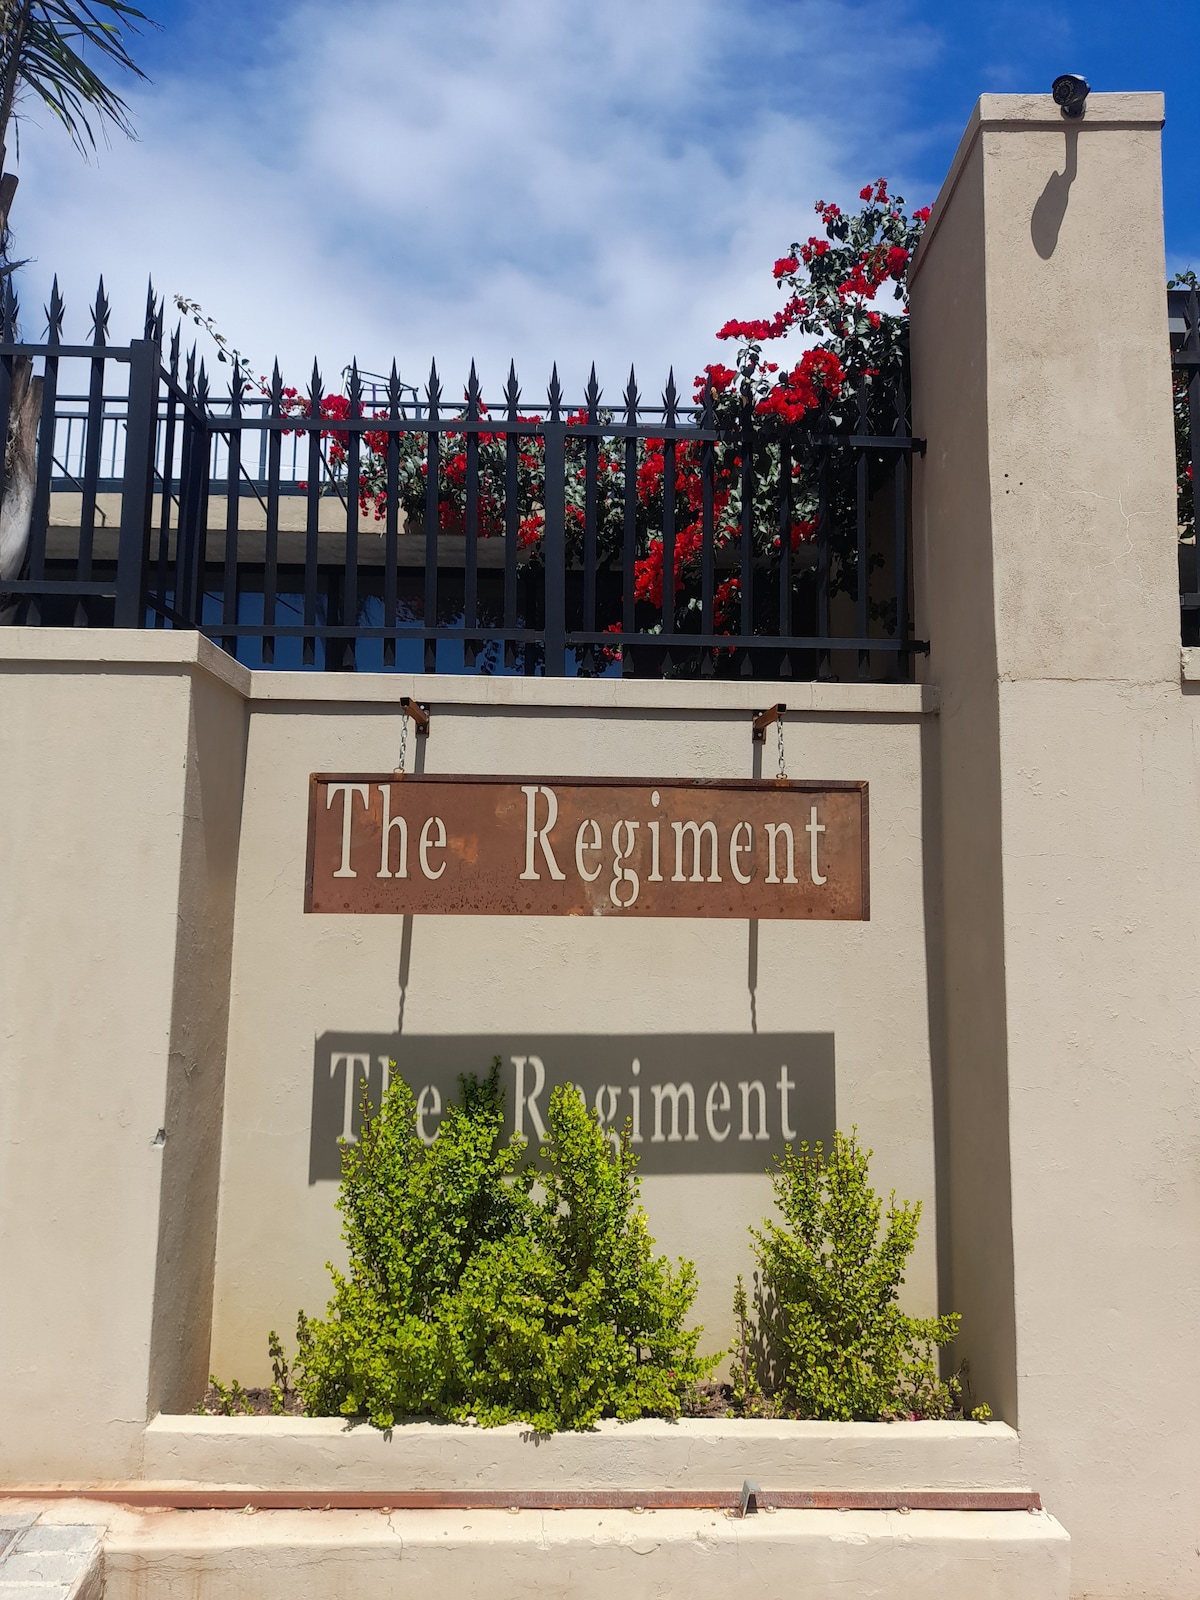 The Regiment Executive Suite